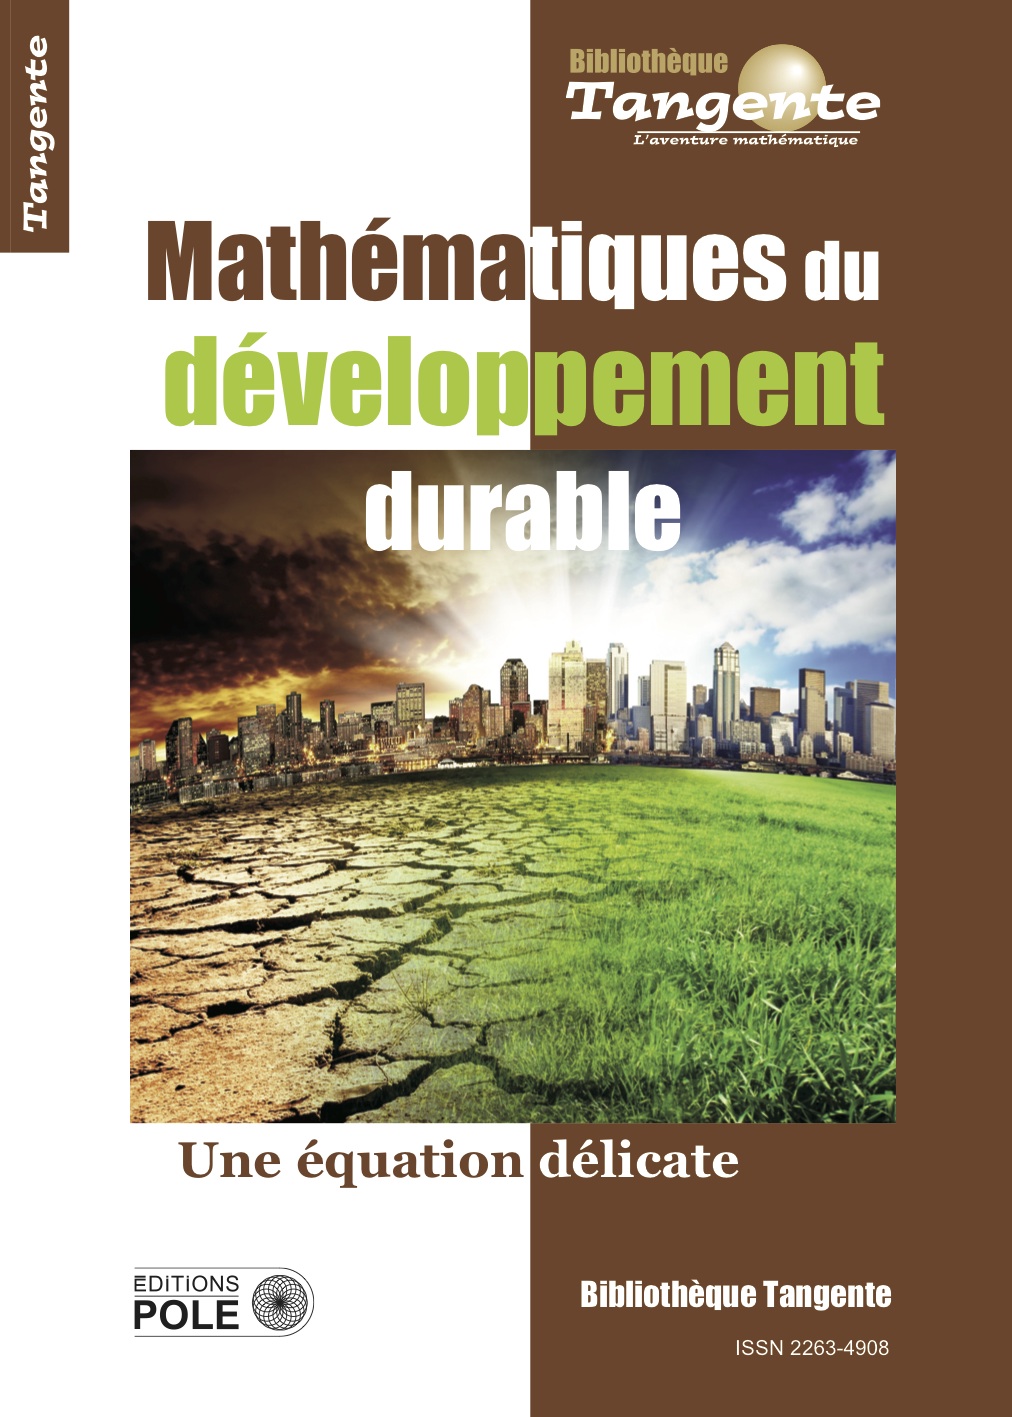 image Bib 67 - Mathématiques et développement durable